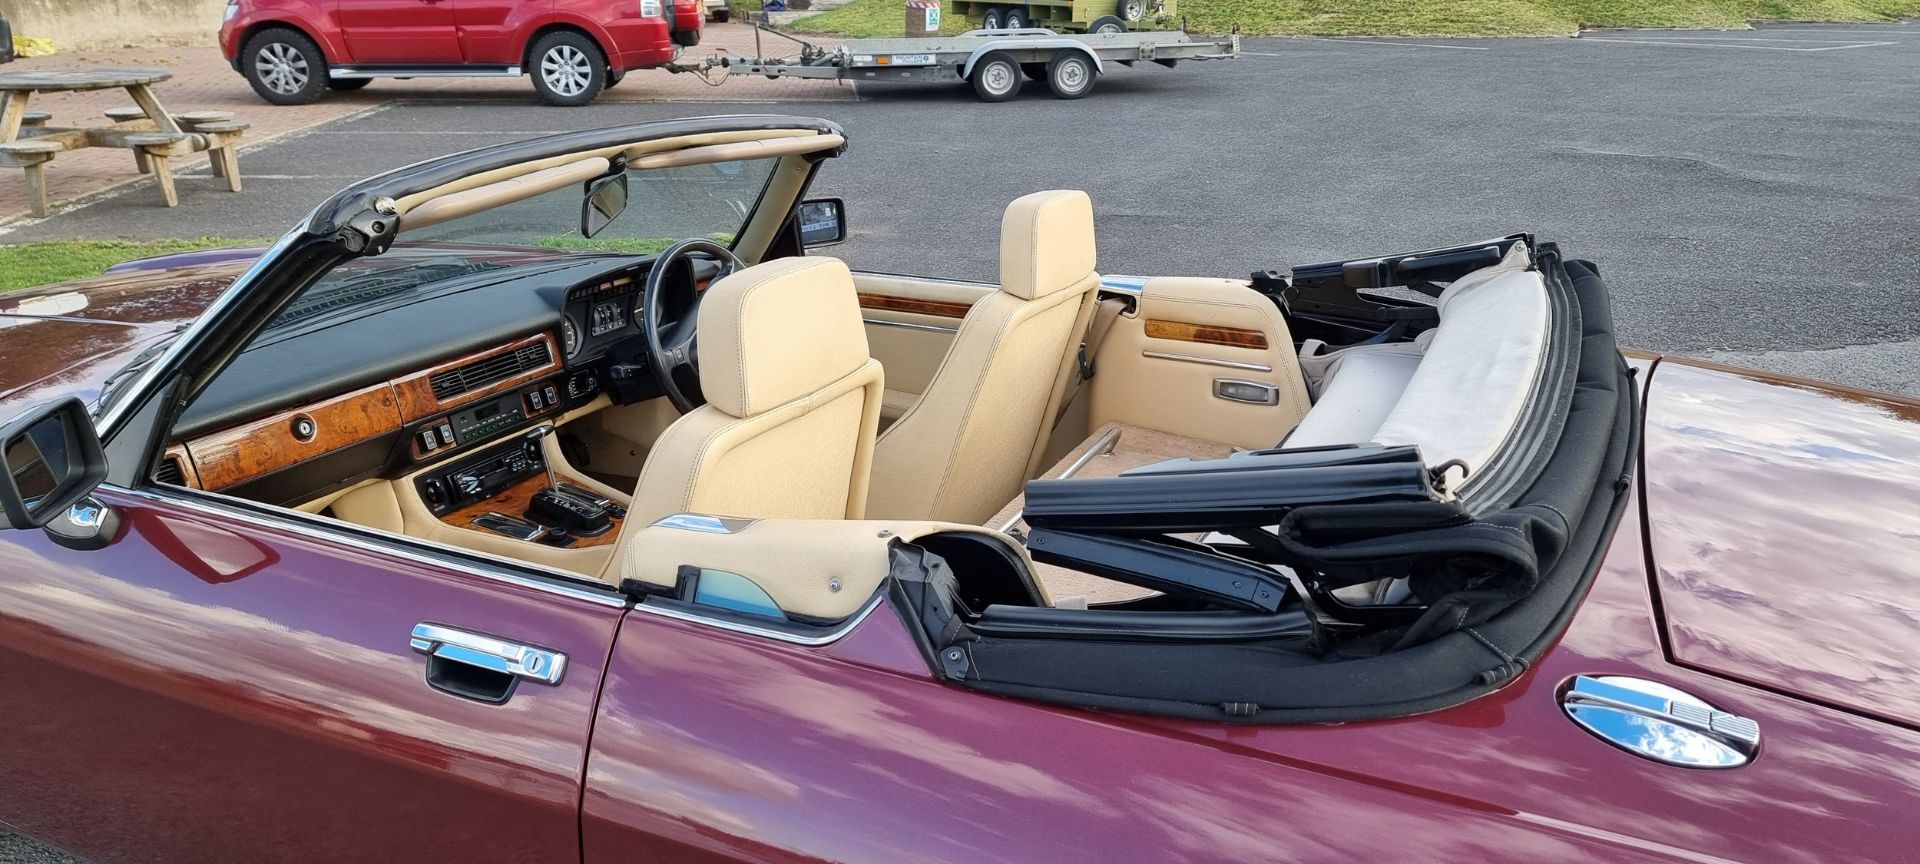 1990 Jaguar XJ-S Convertible, V12, 5343cc. Registration number G43 LHD. VIN number - Image 8 of 31